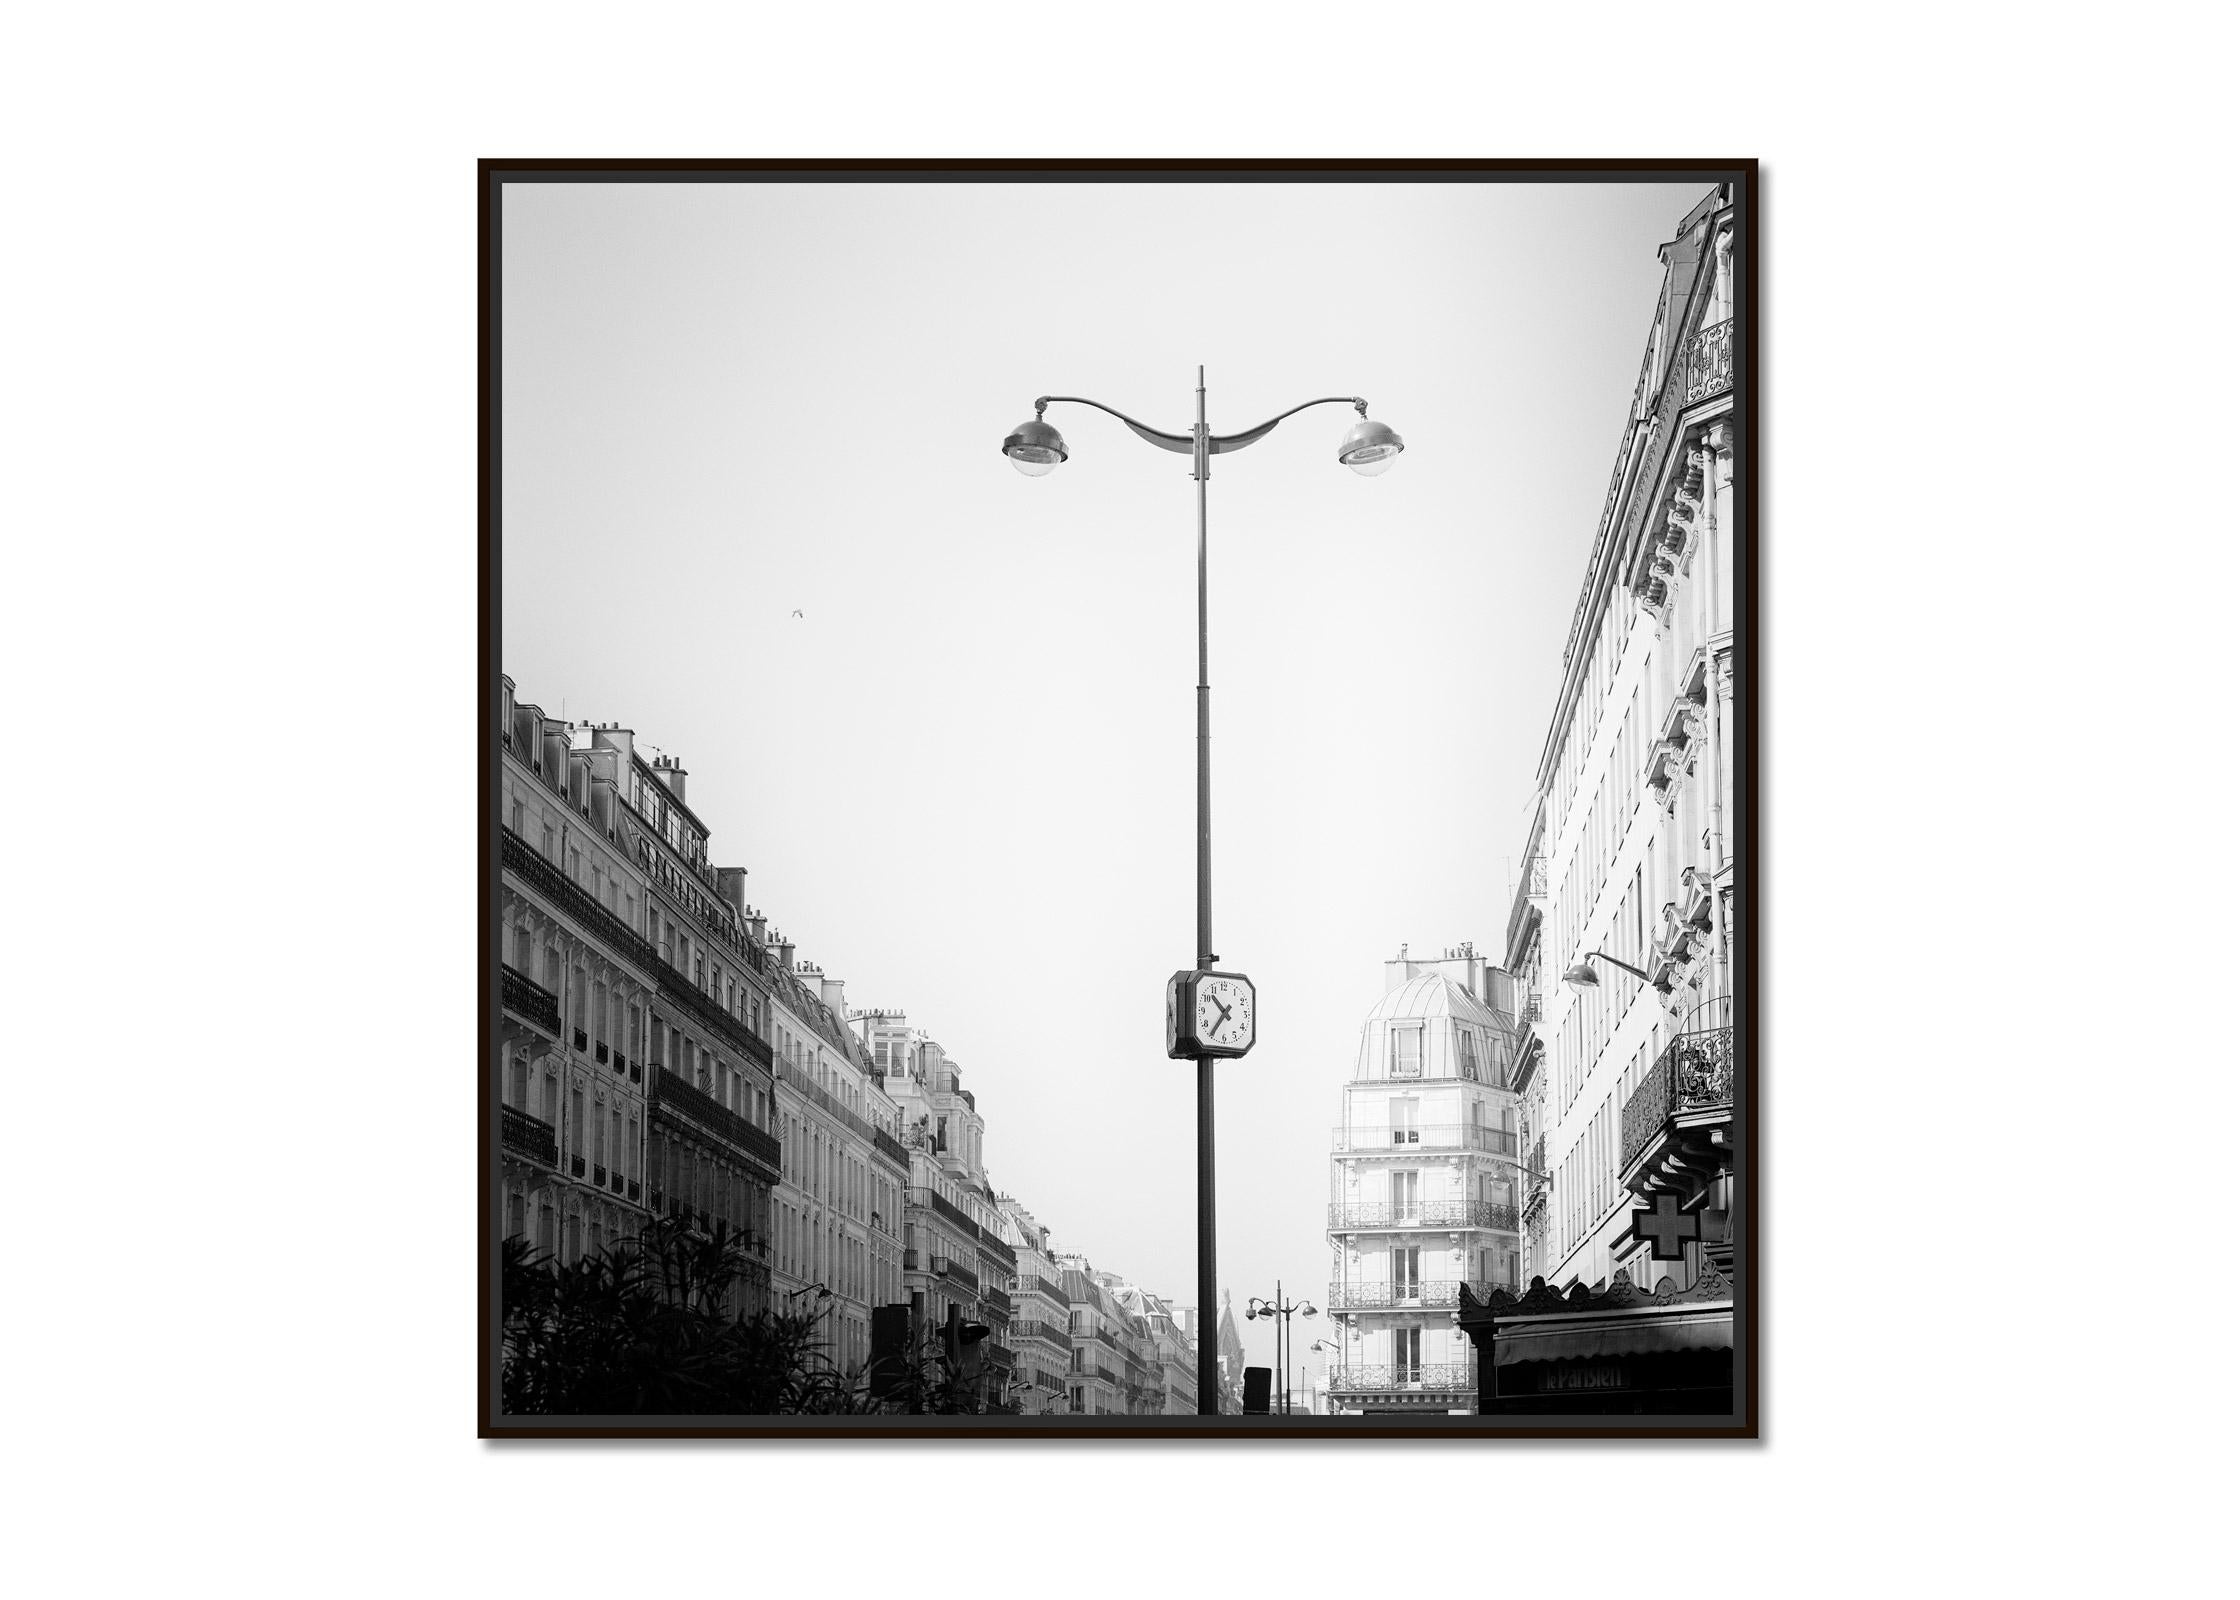 le Parisien, Paris, France, black and white cityscape fine art photography print - Photograph by Gerald Berghammer